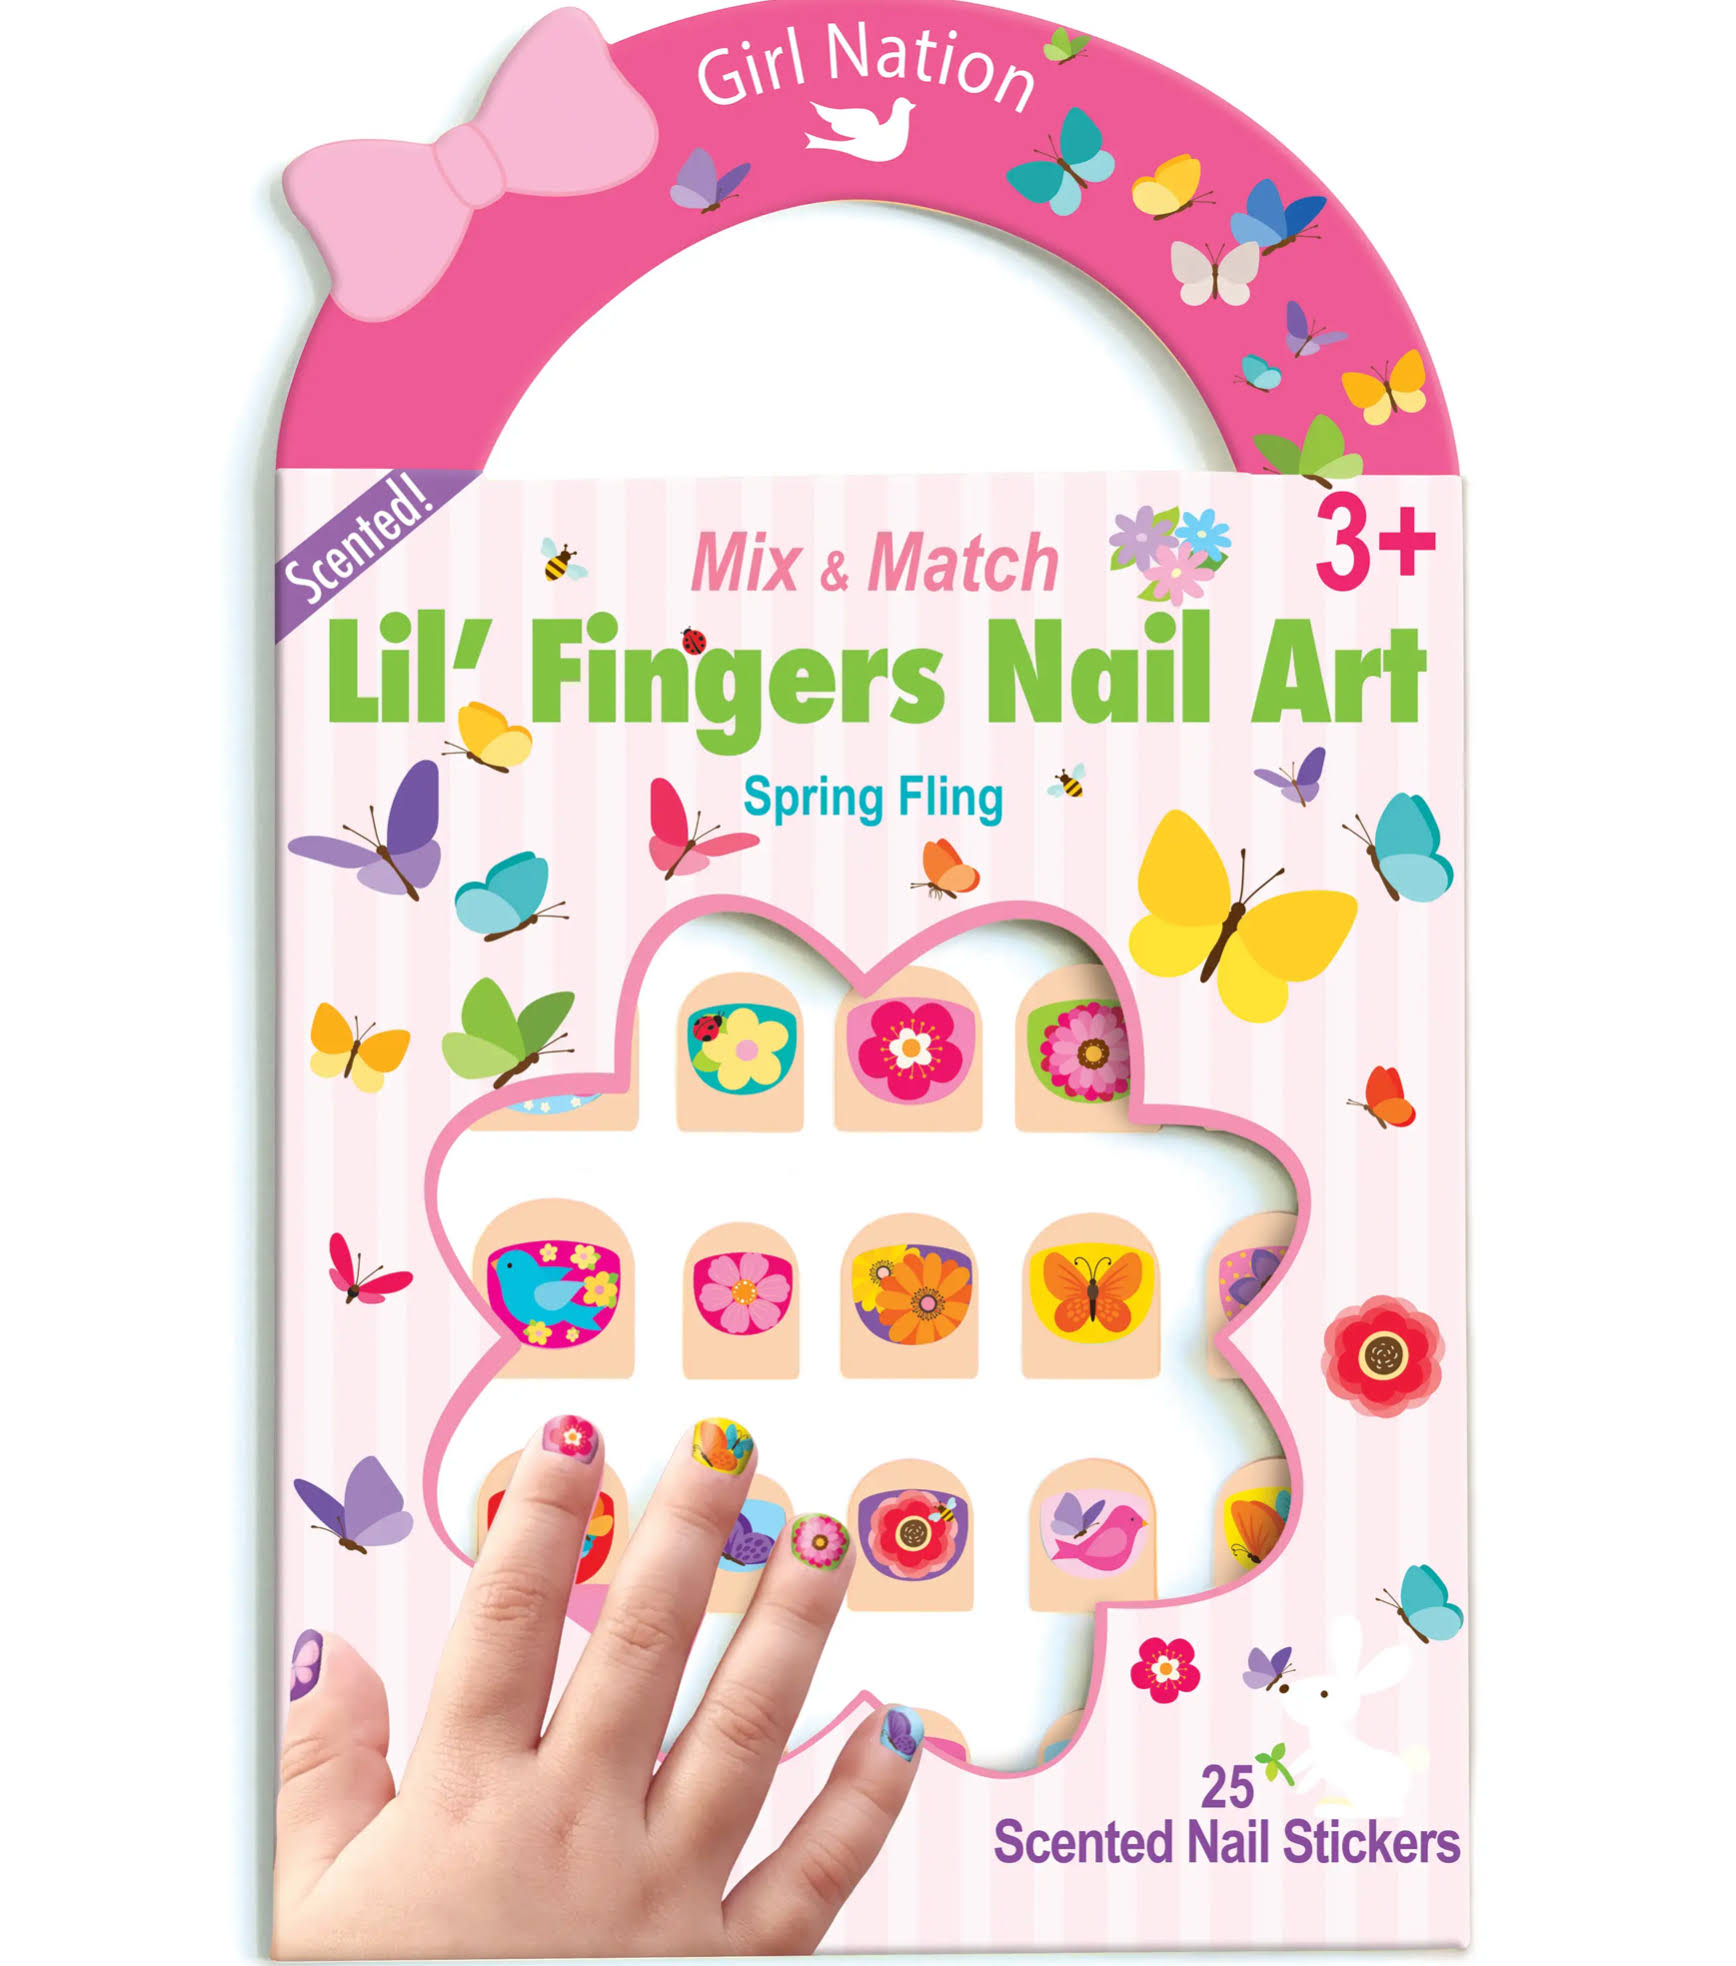 Girl Nation Lil' Fingers Nail Art Pack - Spring Fling